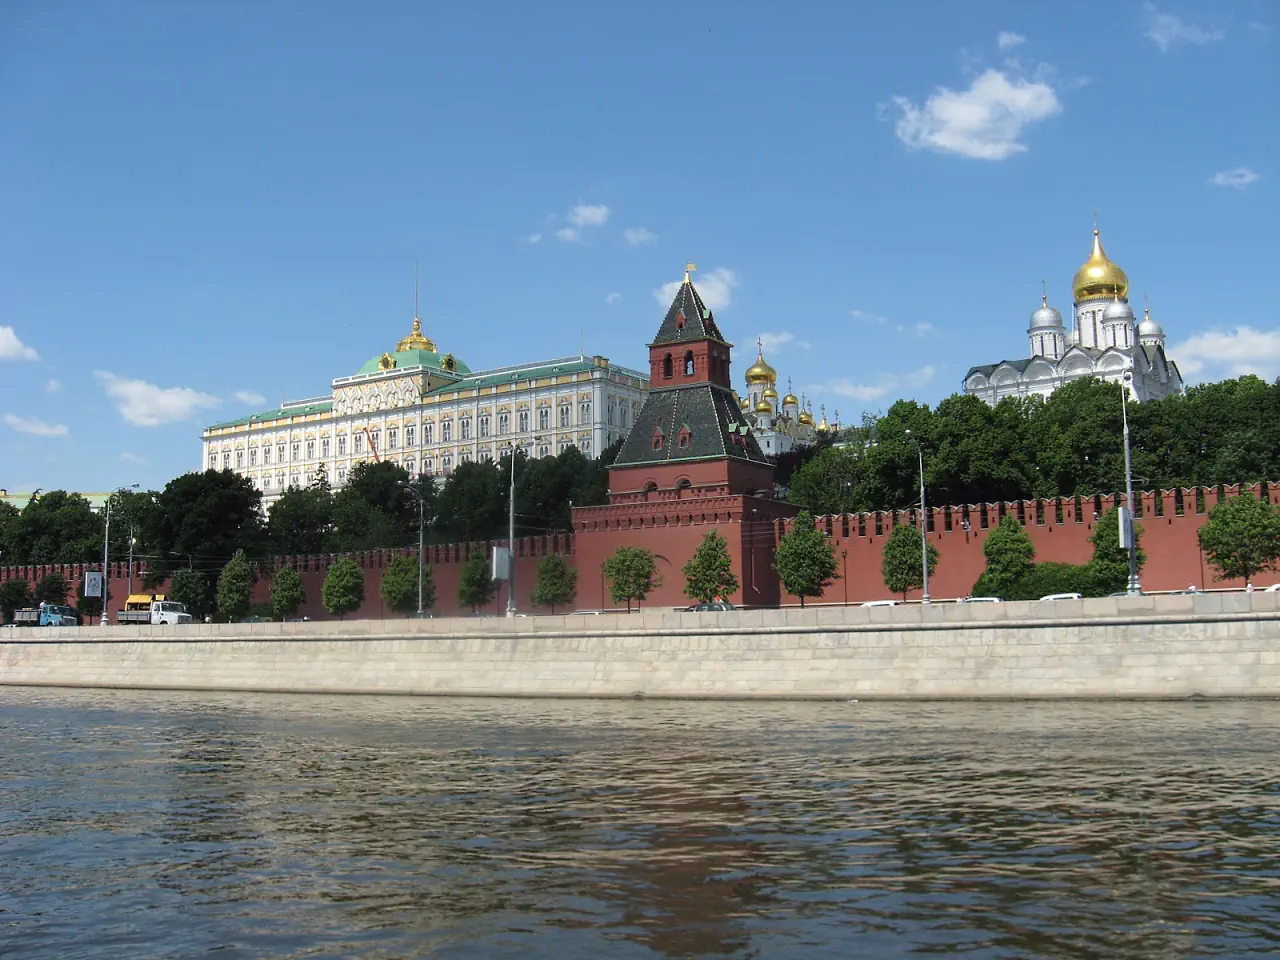 Kremlin 7. Большой Кремлевский дворец и колокольня. Фотографии достопримечательностей которые видно с Москвы реки.